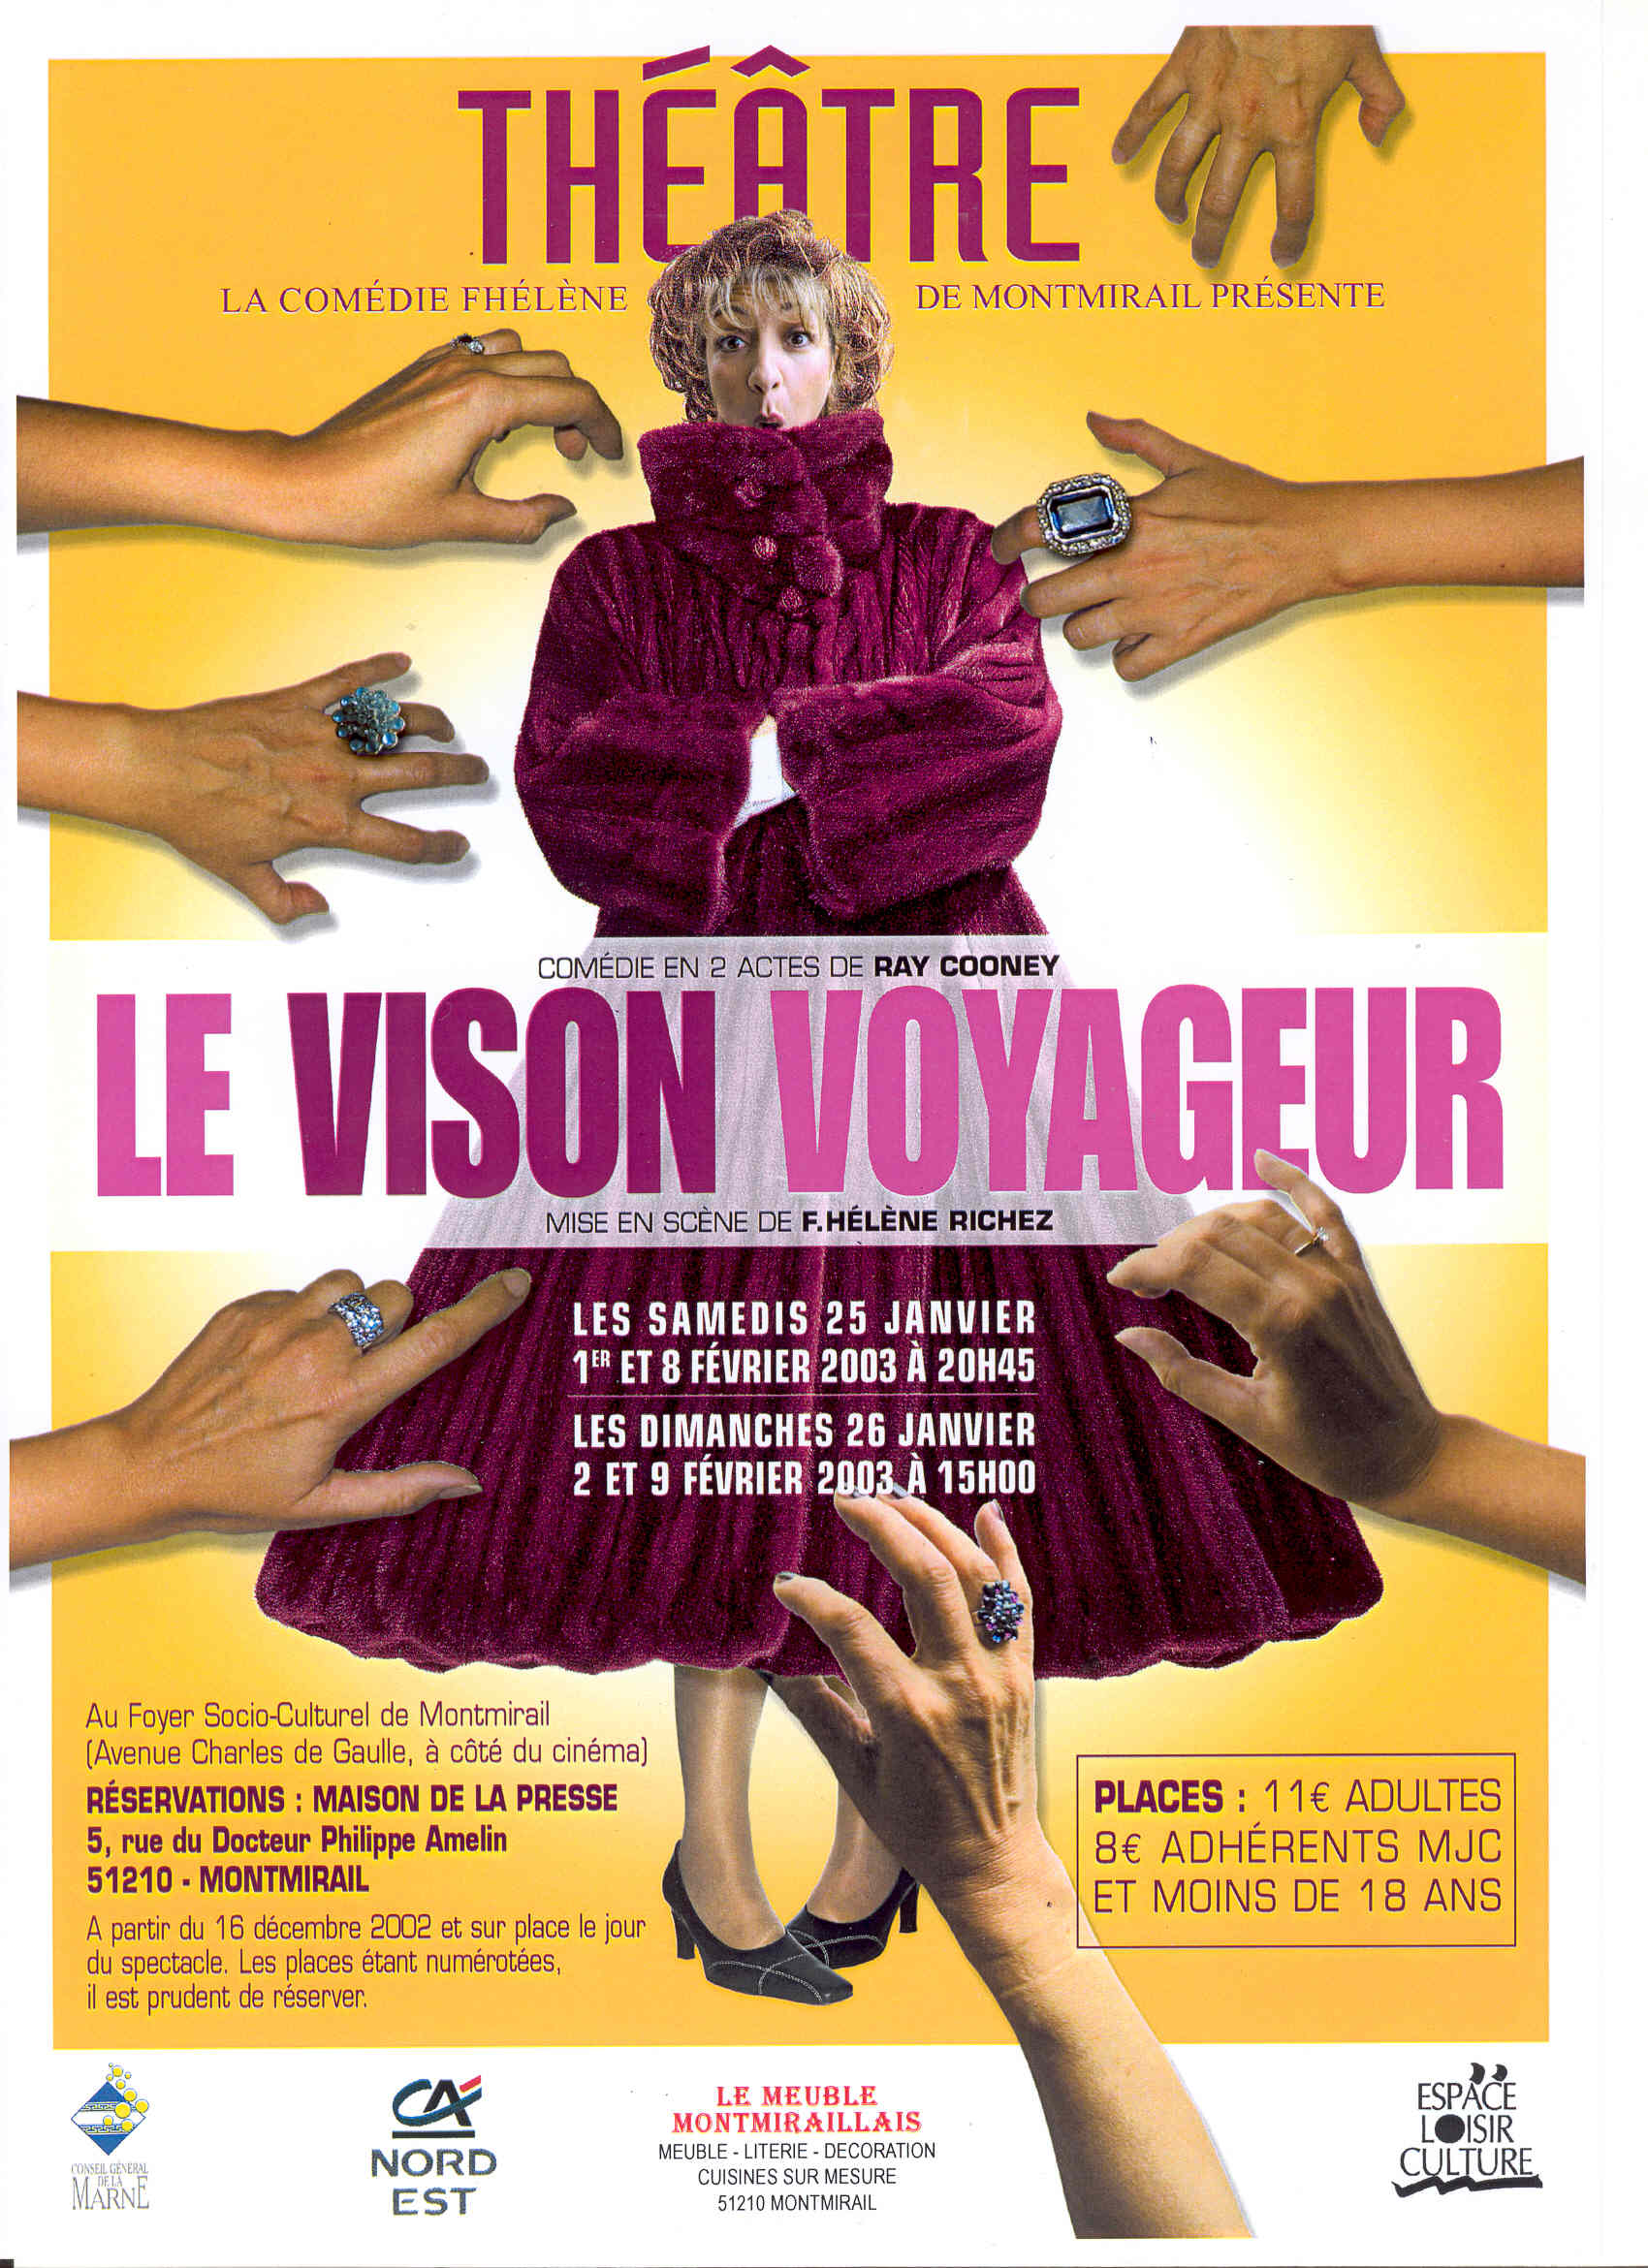 Le Vison Voyageur Espace Loisir Culture